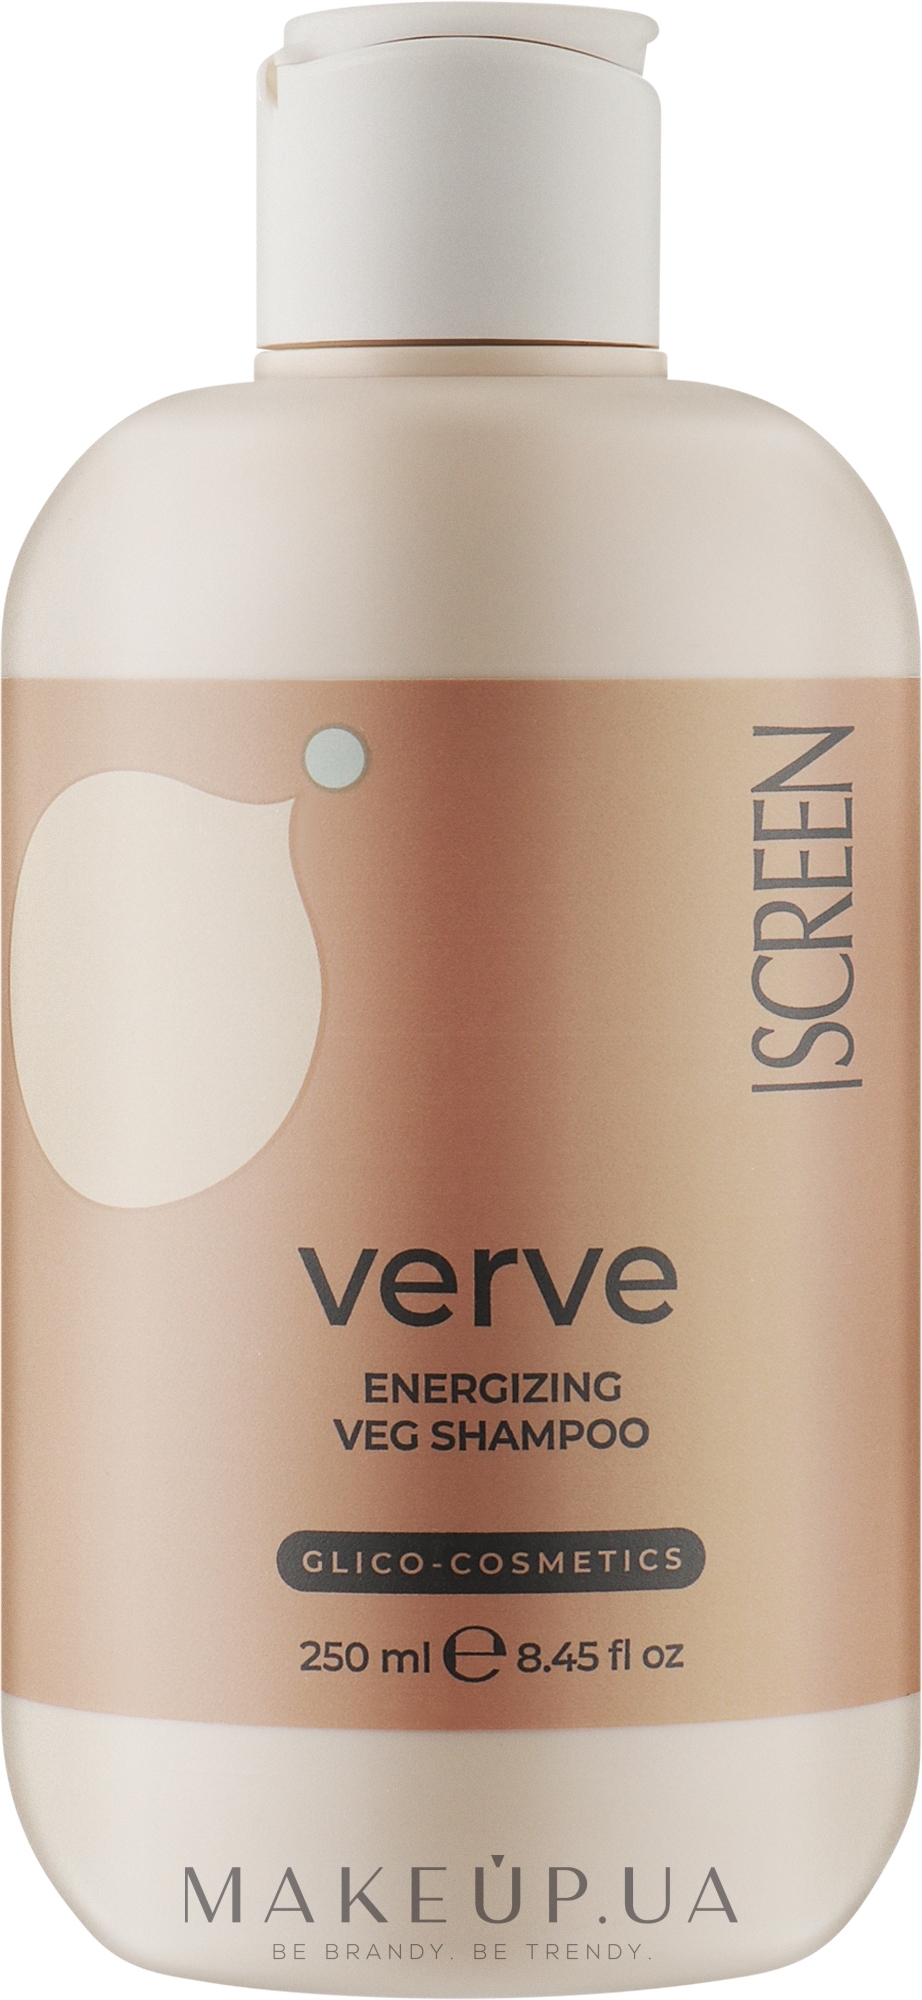 Стимулюючий шампунь для профілактики випадіння волосся - Screen Purest Verve Energizing Veg Shampoo — фото 250ml